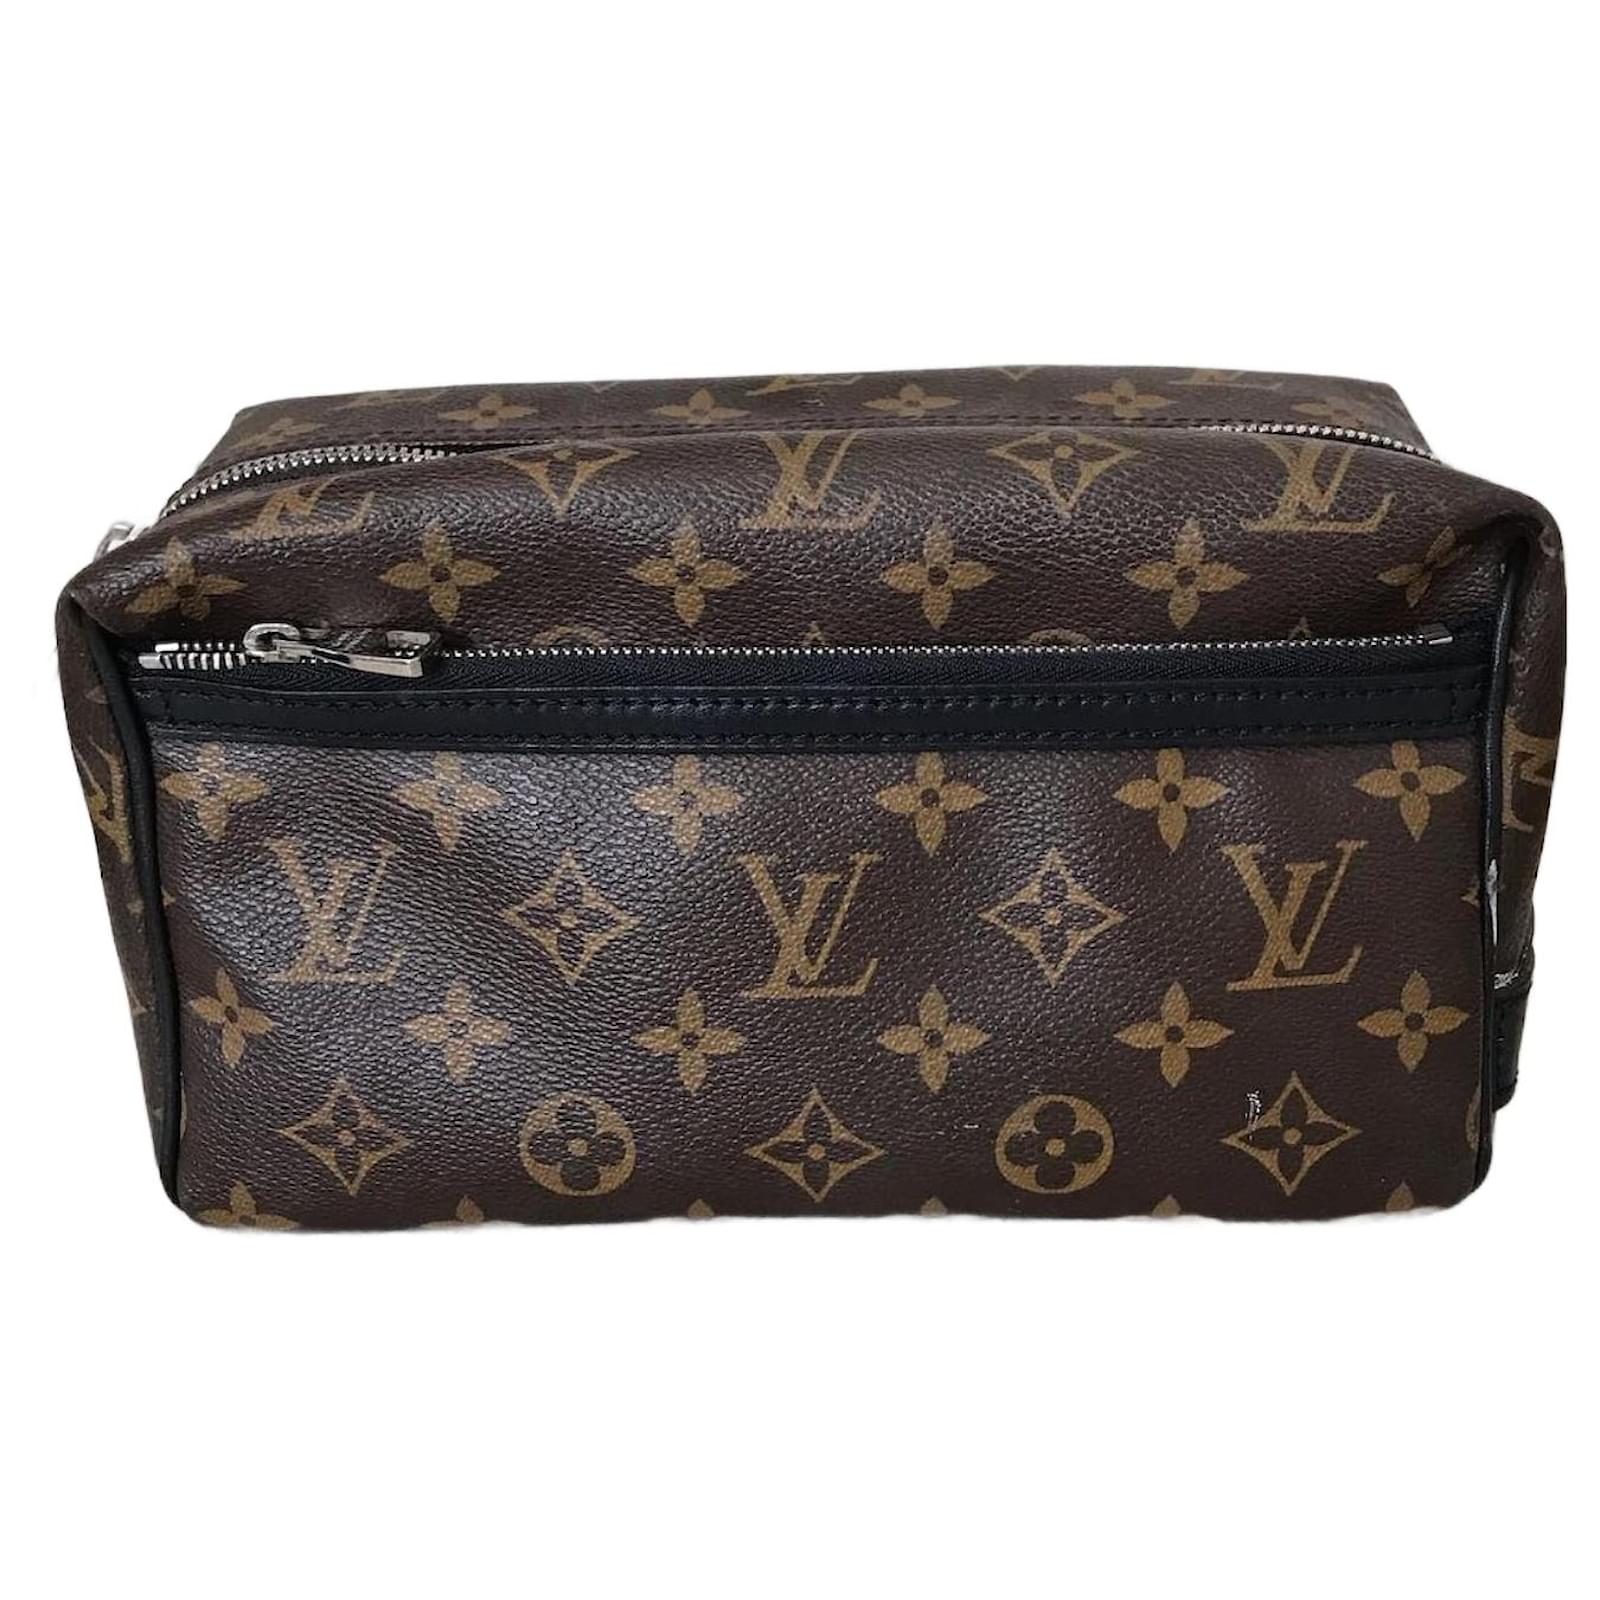 Travel Bag Louis Vuitton Louis Vuitton Travel Bags T. Leather